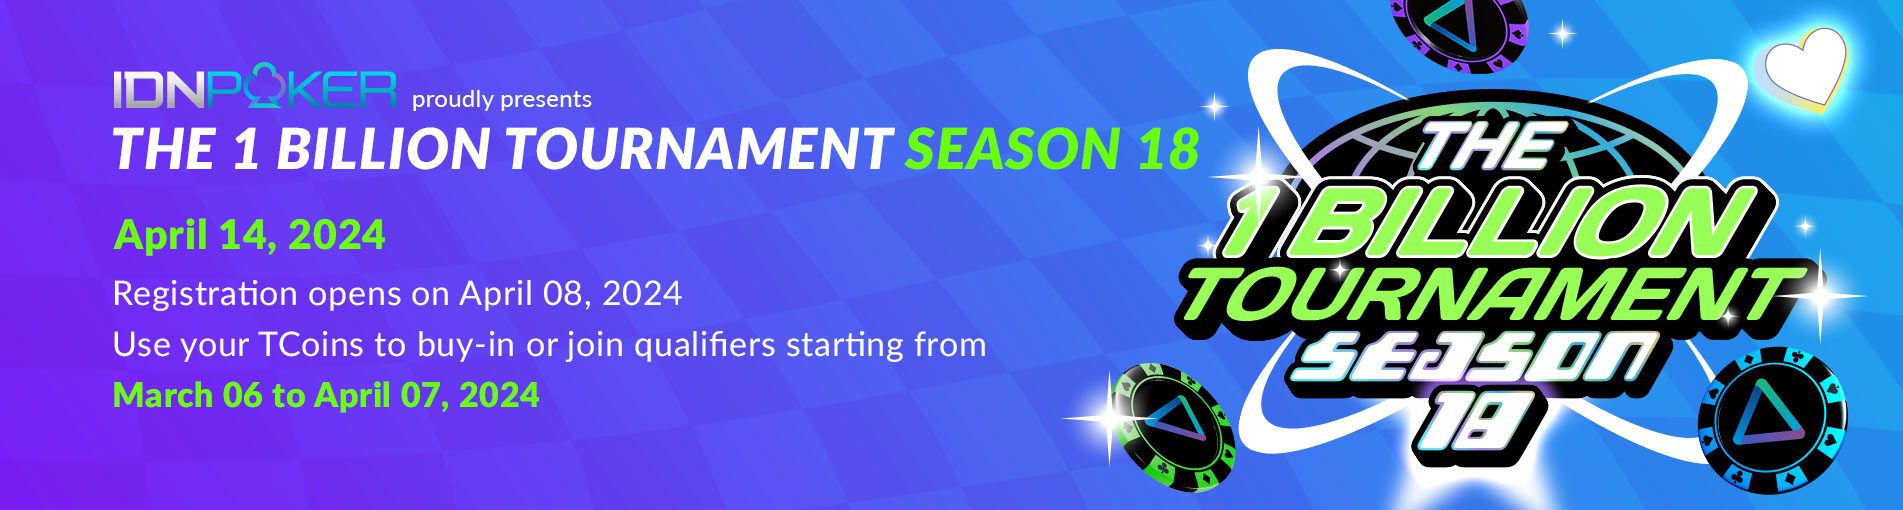 The 1 Billion Tournament Season 18